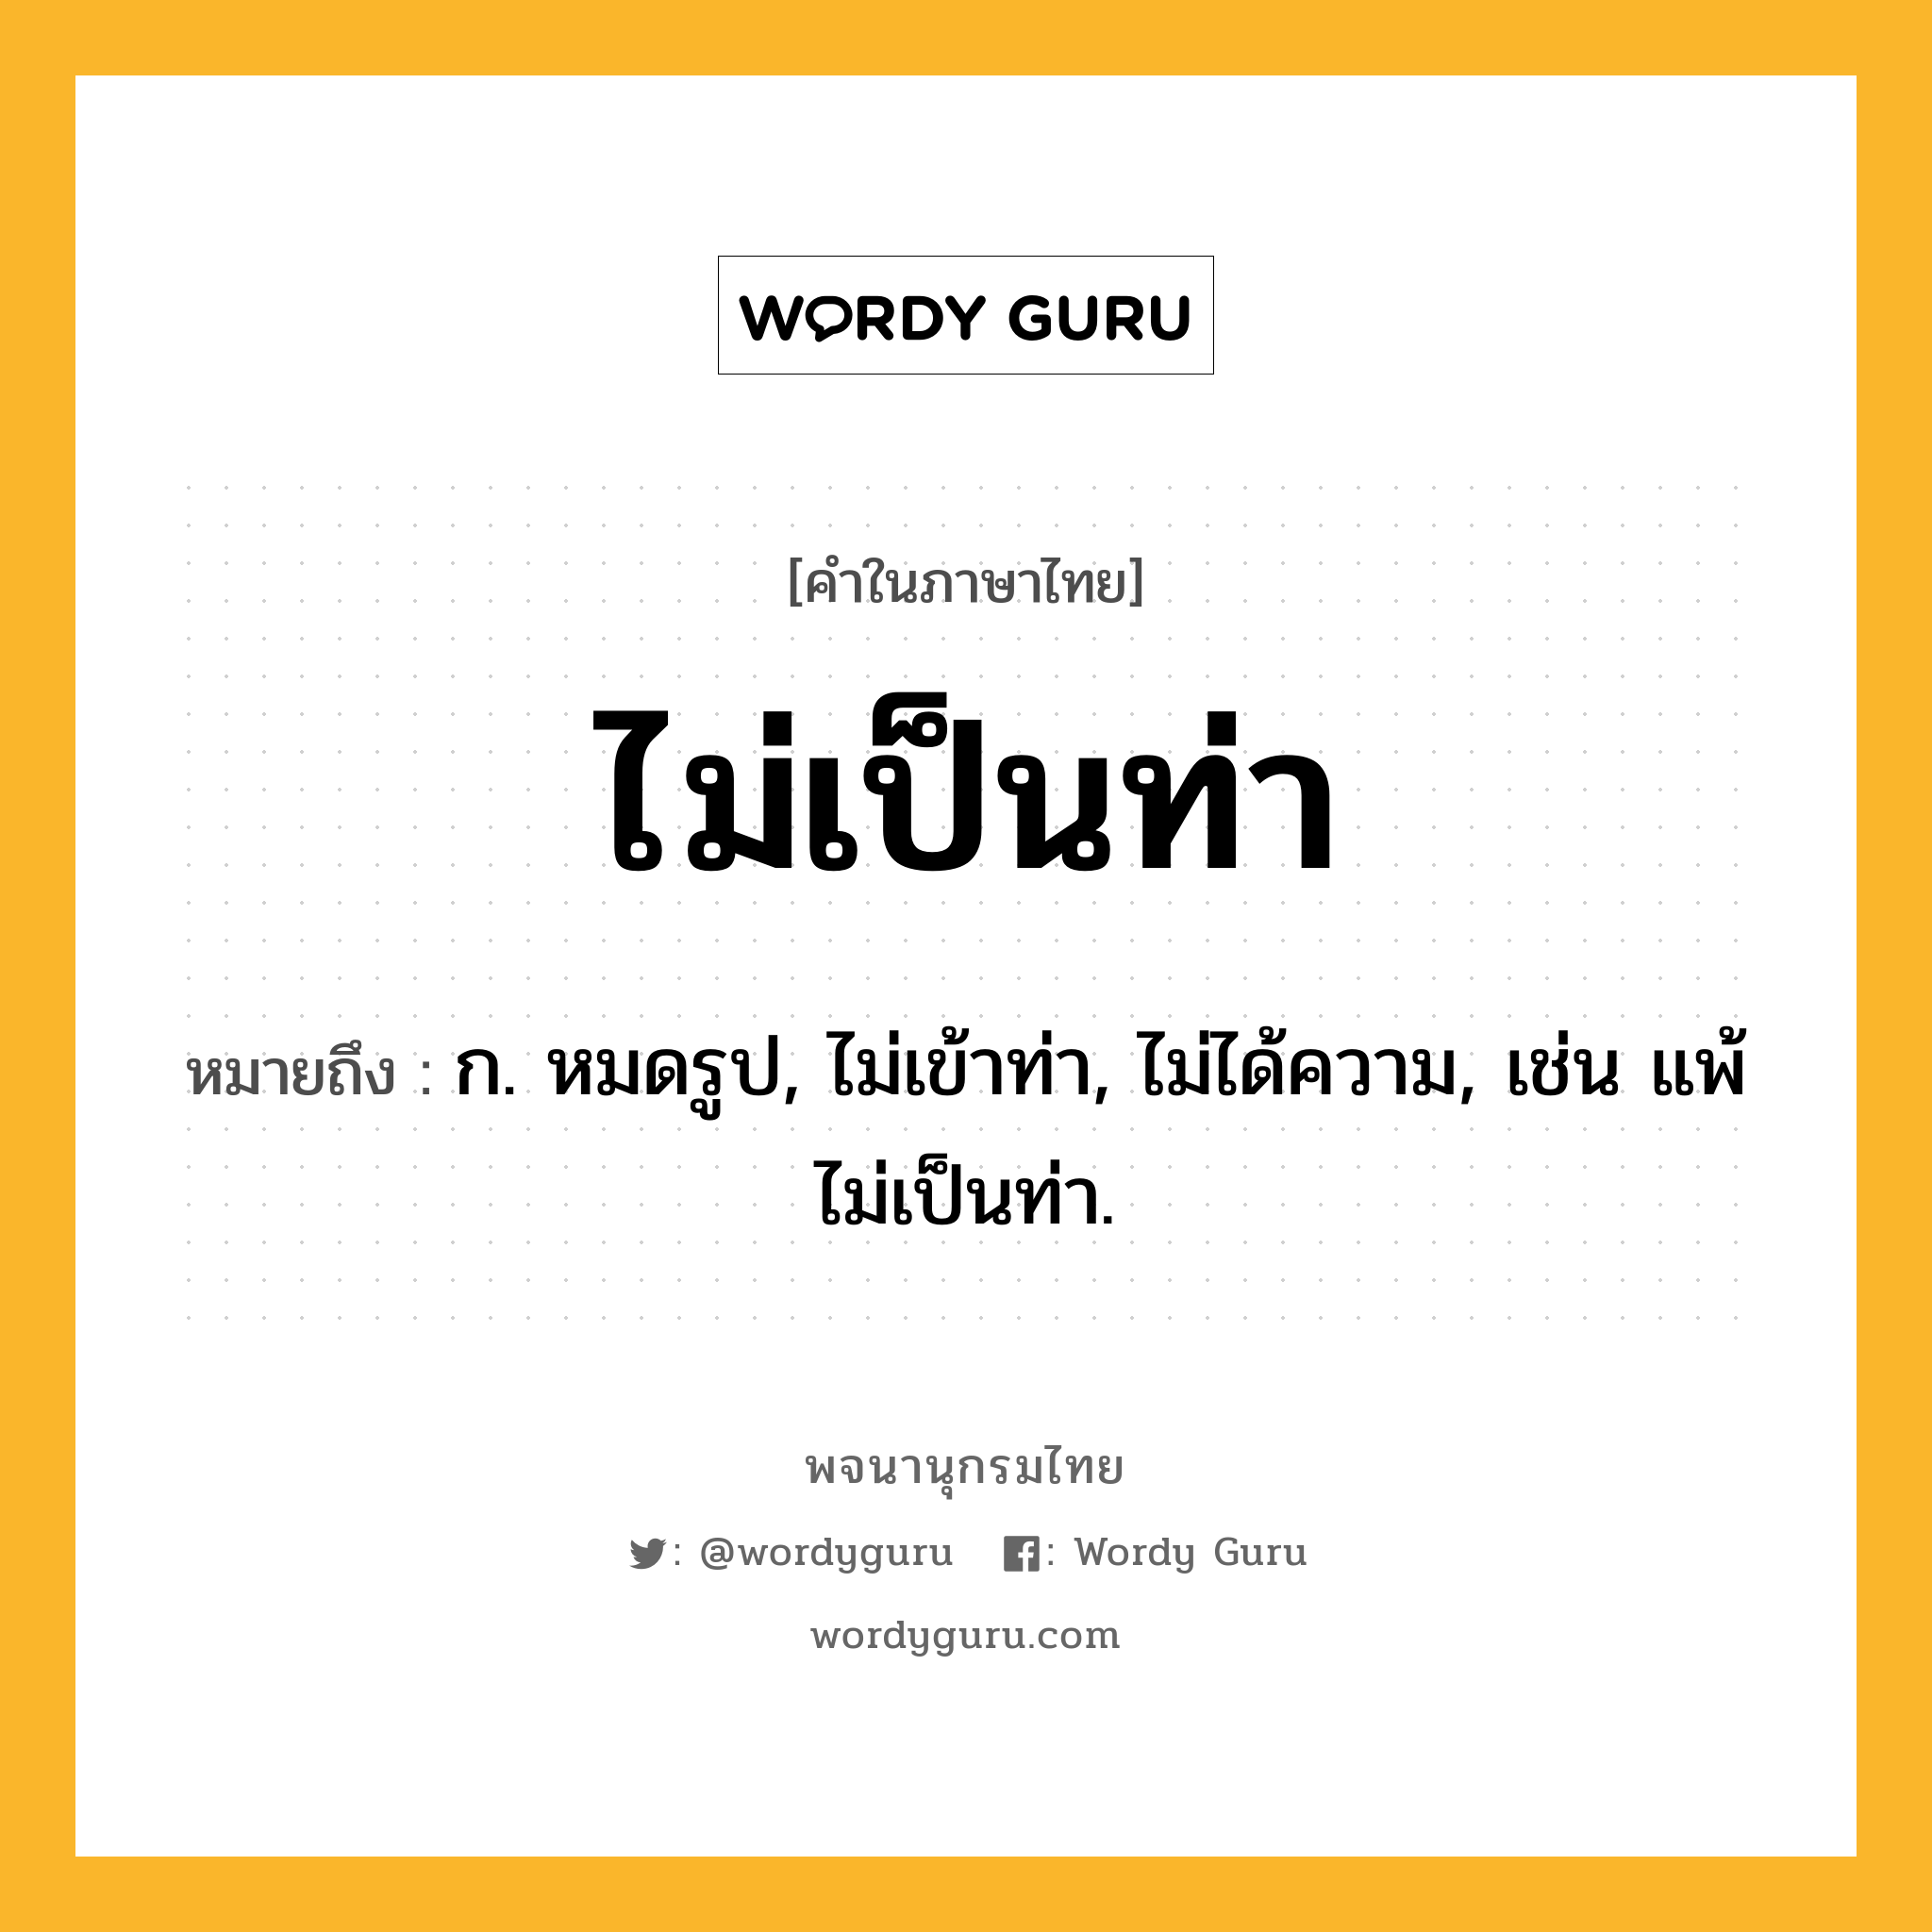 ไม่เป็นท่า ความหมาย หมายถึงอะไร?, คำในภาษาไทย ไม่เป็นท่า หมายถึง ก. หมดรูป, ไม่เข้าท่า, ไม่ได้ความ, เช่น แพ้ไม่เป็นท่า.